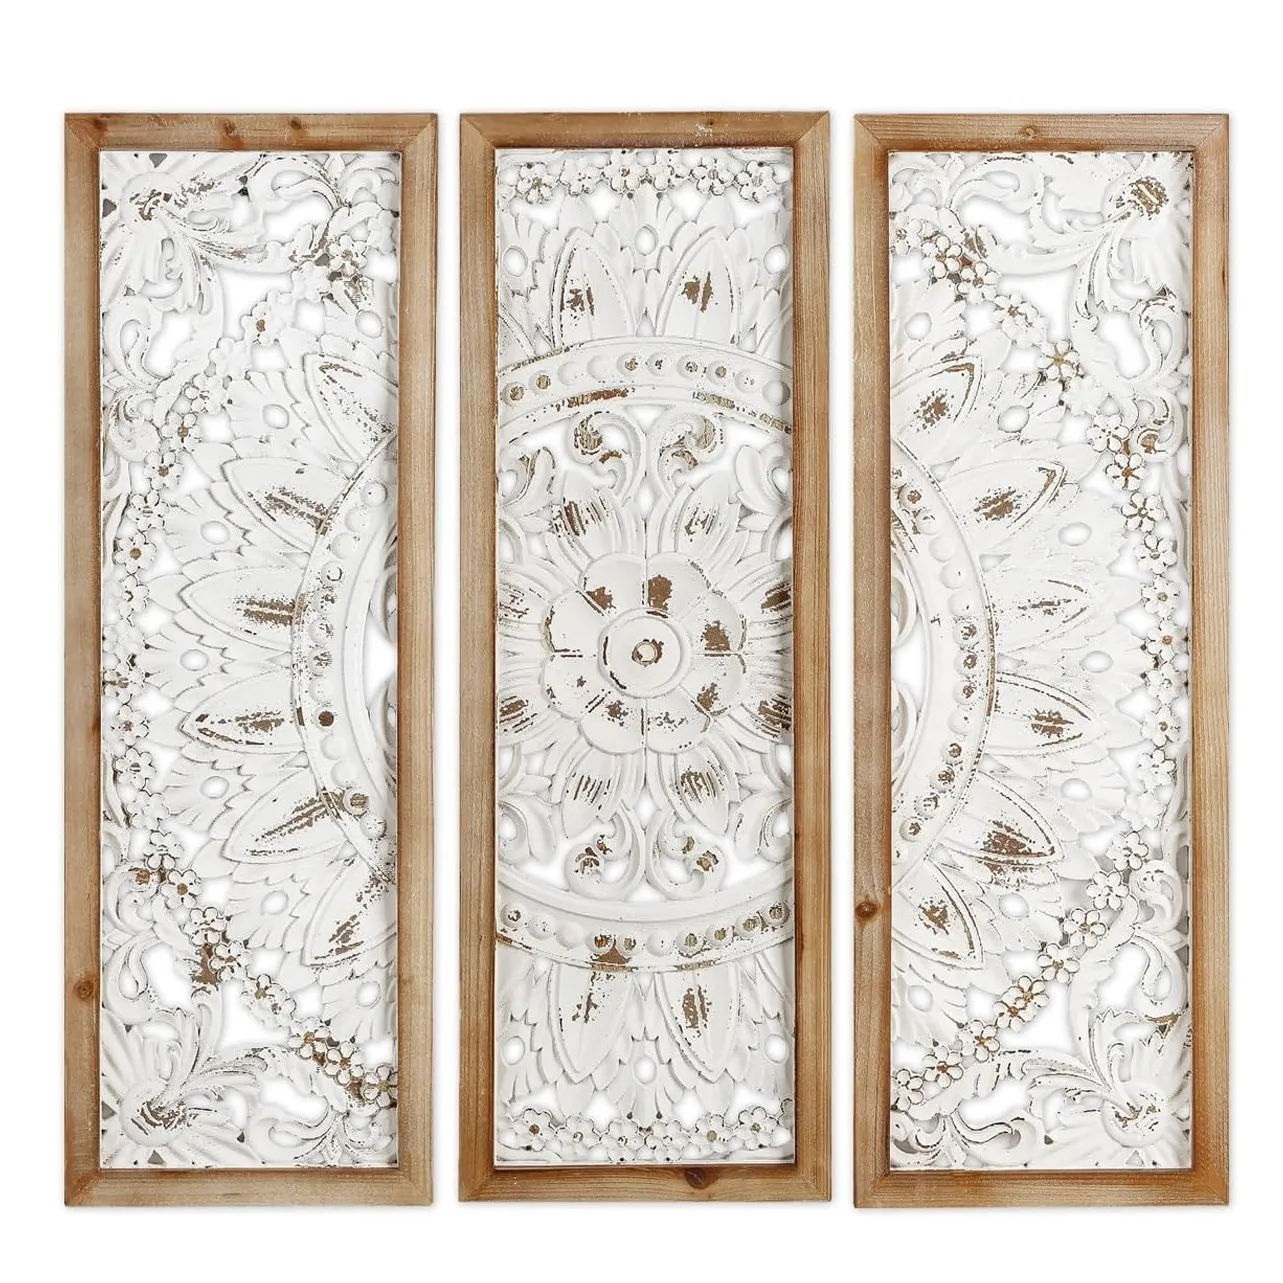 Geschnitzte Holz-Wandkunst-Deko handgeschnitzt auf antiken zerrissenen weißen Platten dekorative Skulptur elegante Holzplatte